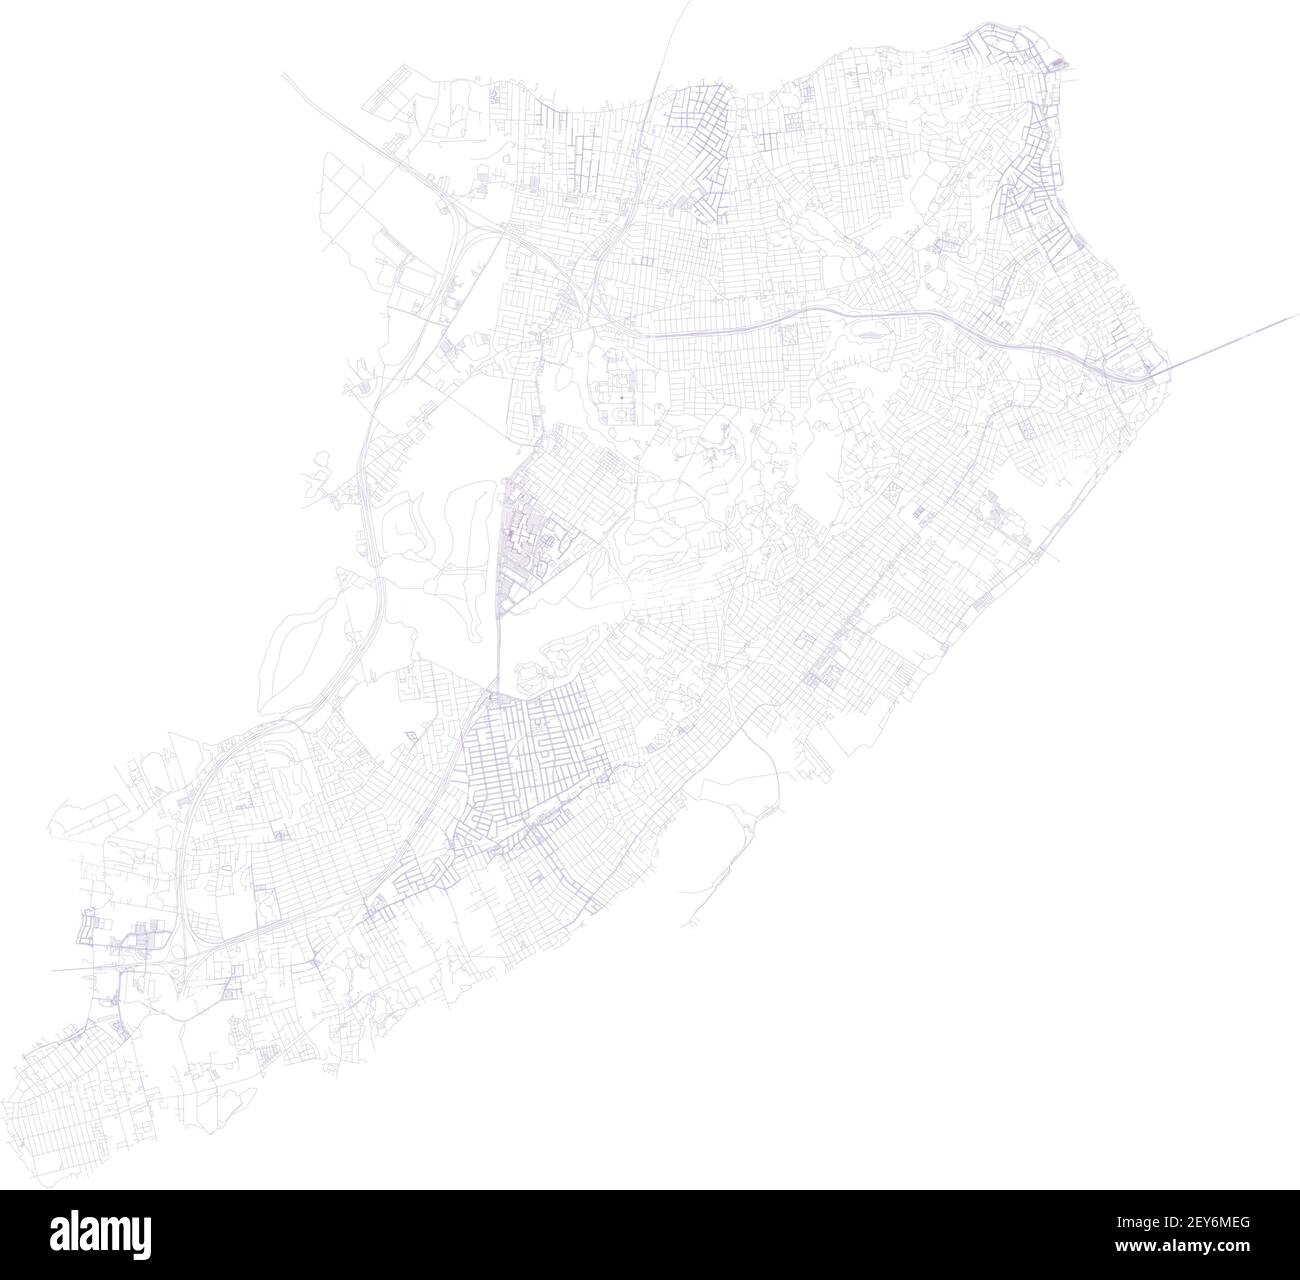 Carte de l'île Staten, ville de New York, quartiers, administration gouvernementale. Rues et quartier. Plan de la ville. États-Unis Illustration de Vecteur